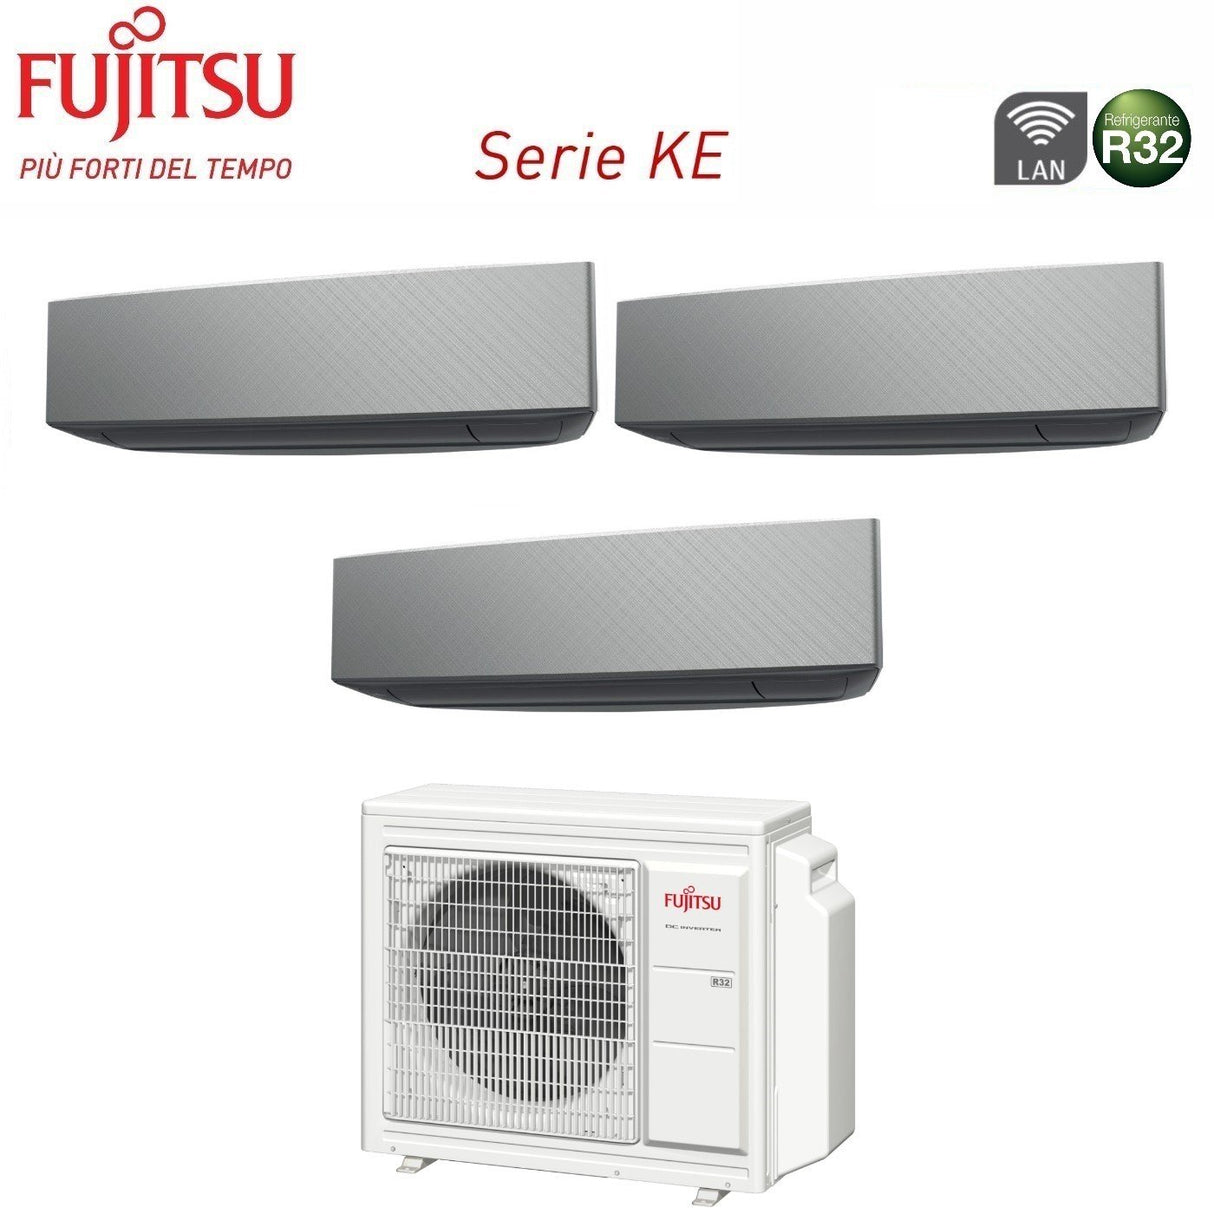 immagine-2-fujitsu-climatizzatore-condizionatore-fujitsu-trial-split-inverter-serie-ke-silver-91214-con-aoyg24kbta3-r-32-wi-fi-integrato-90001200014000-colore-bianco